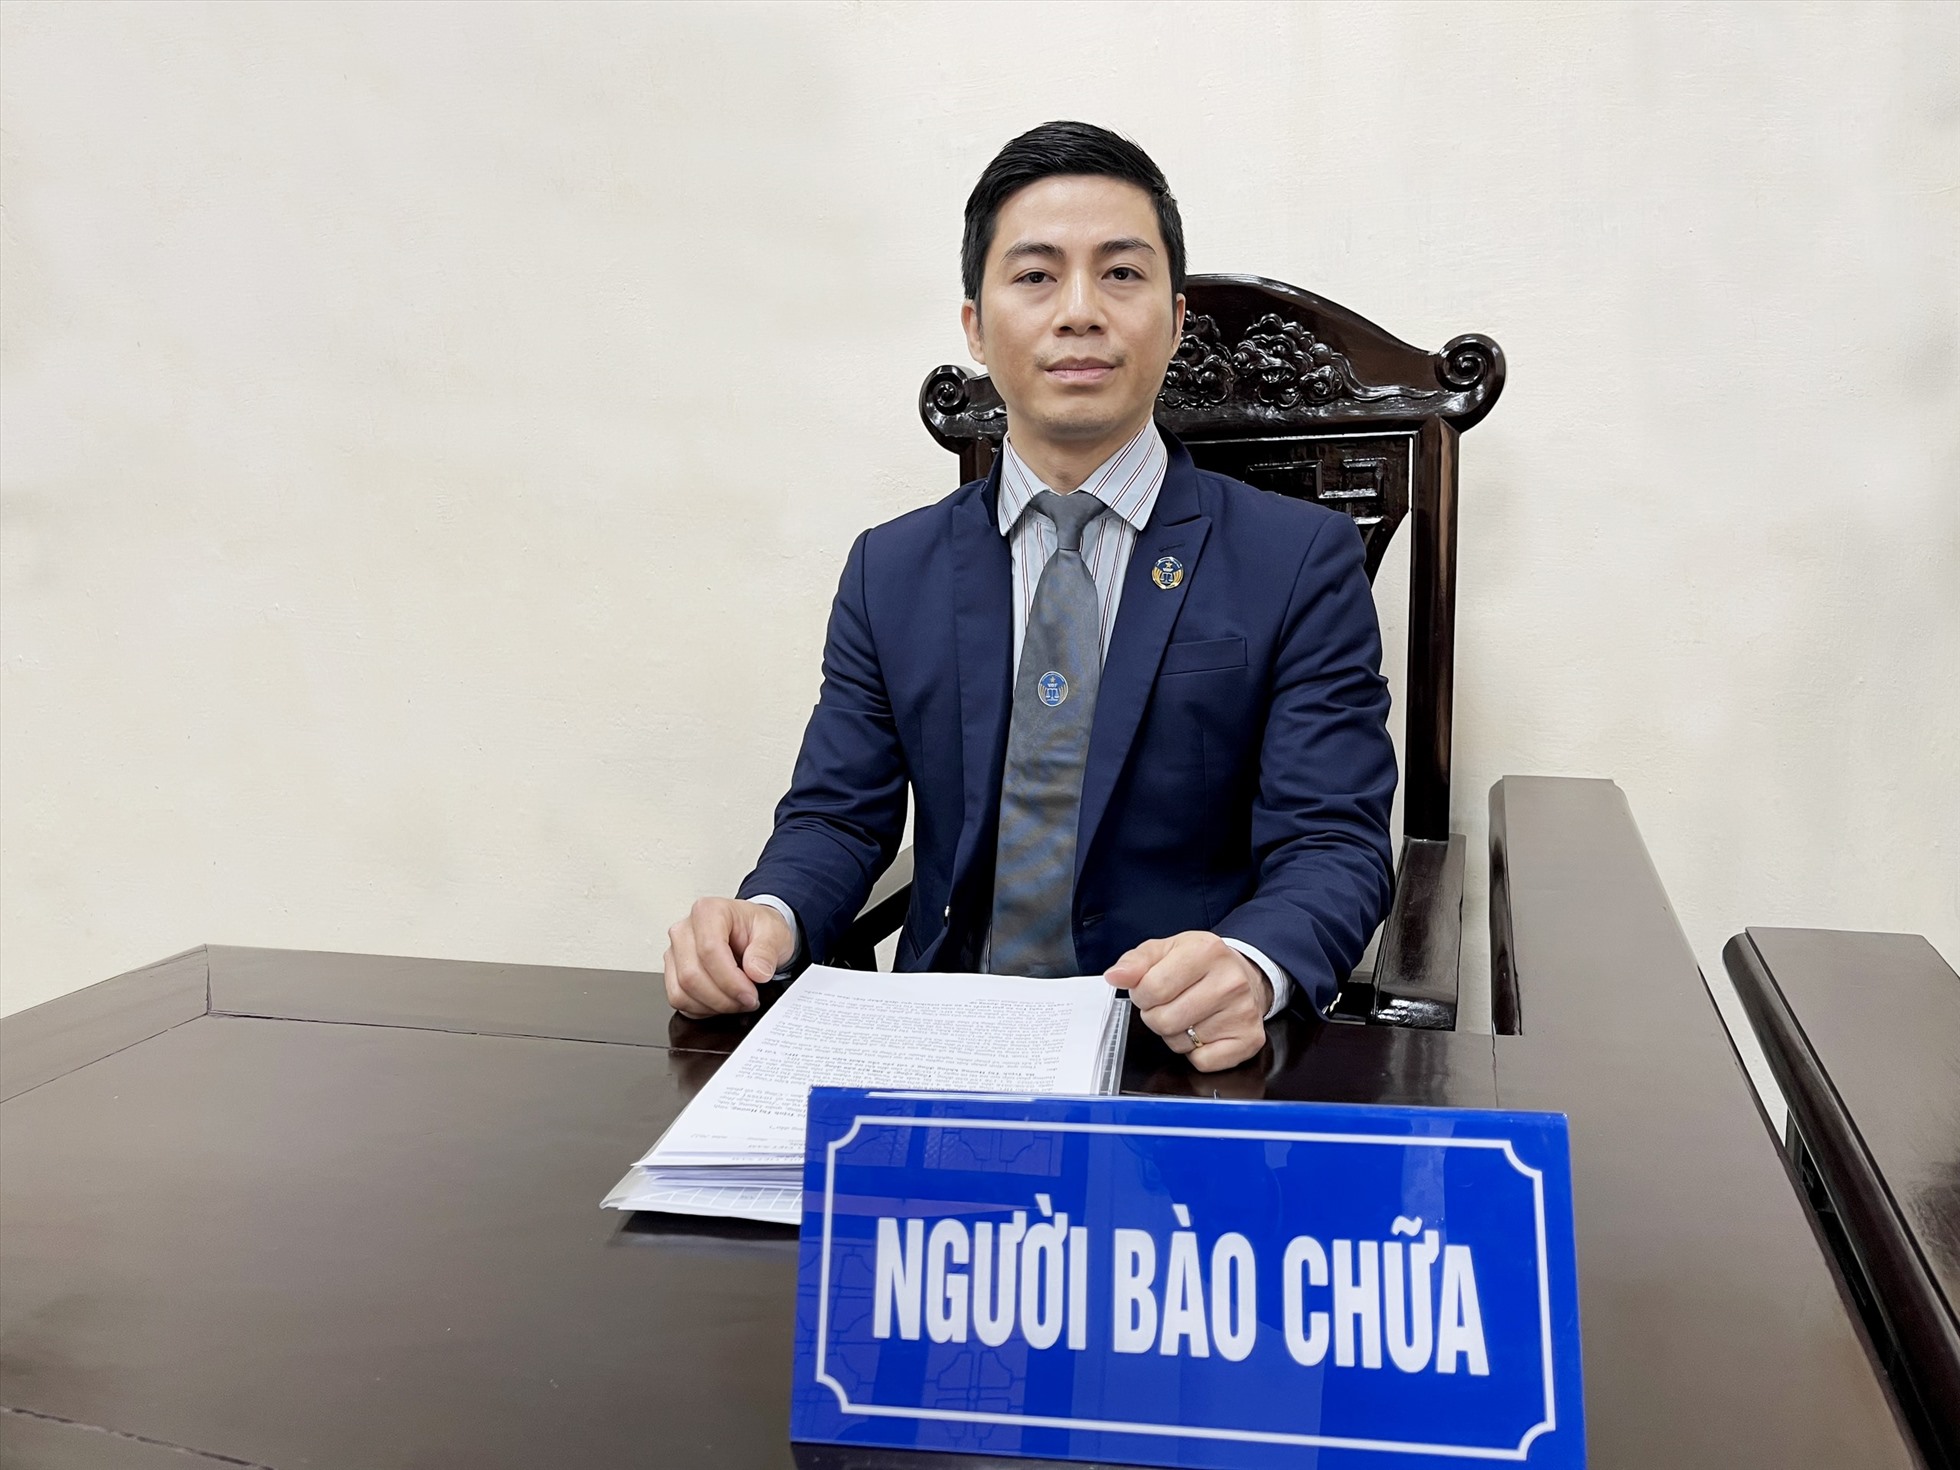 Luật sư Nguyễn Văn Đồng cho rằng, để xảy ra tình trạng chặt chém khách du xuân, cần xem xét trách nhiệm của địa phương. Ảnh: Nhân vật cung cấp